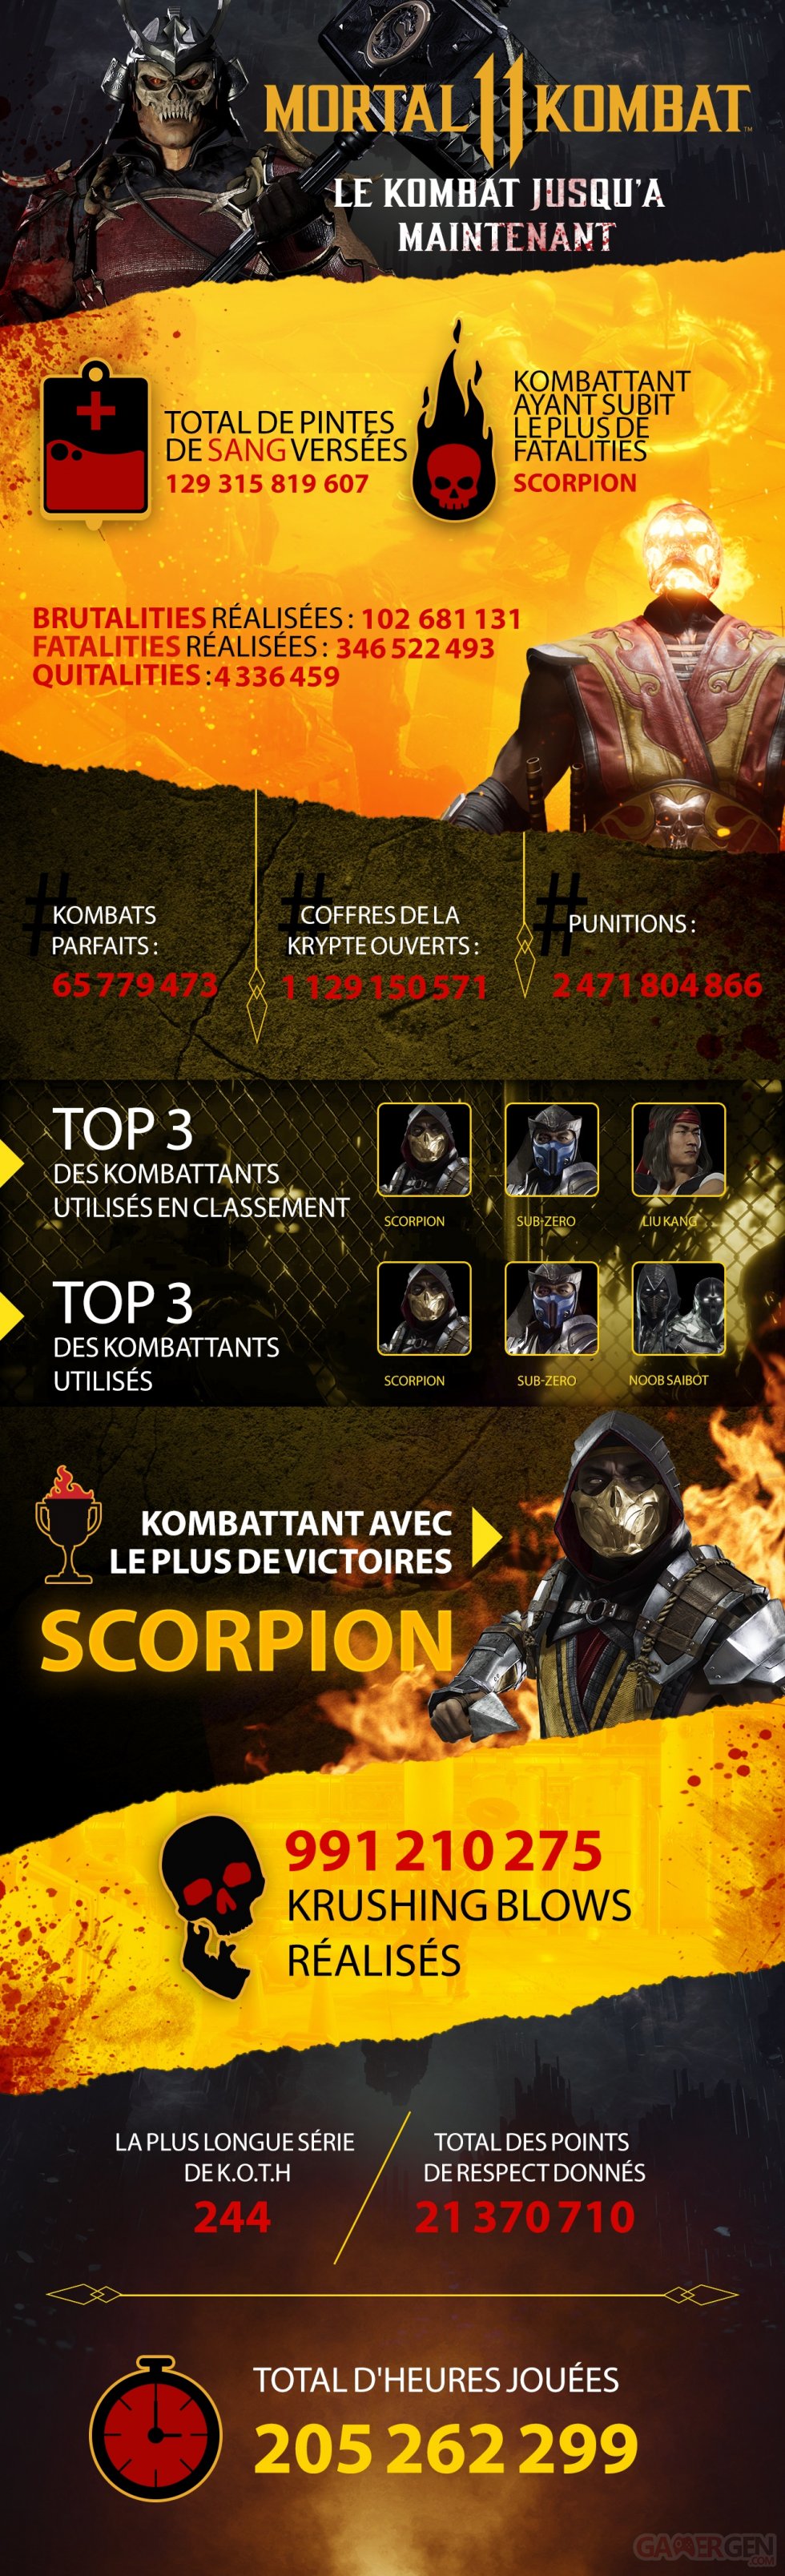 Mortal Kombat 11_Infographic_v4_newfont_FR